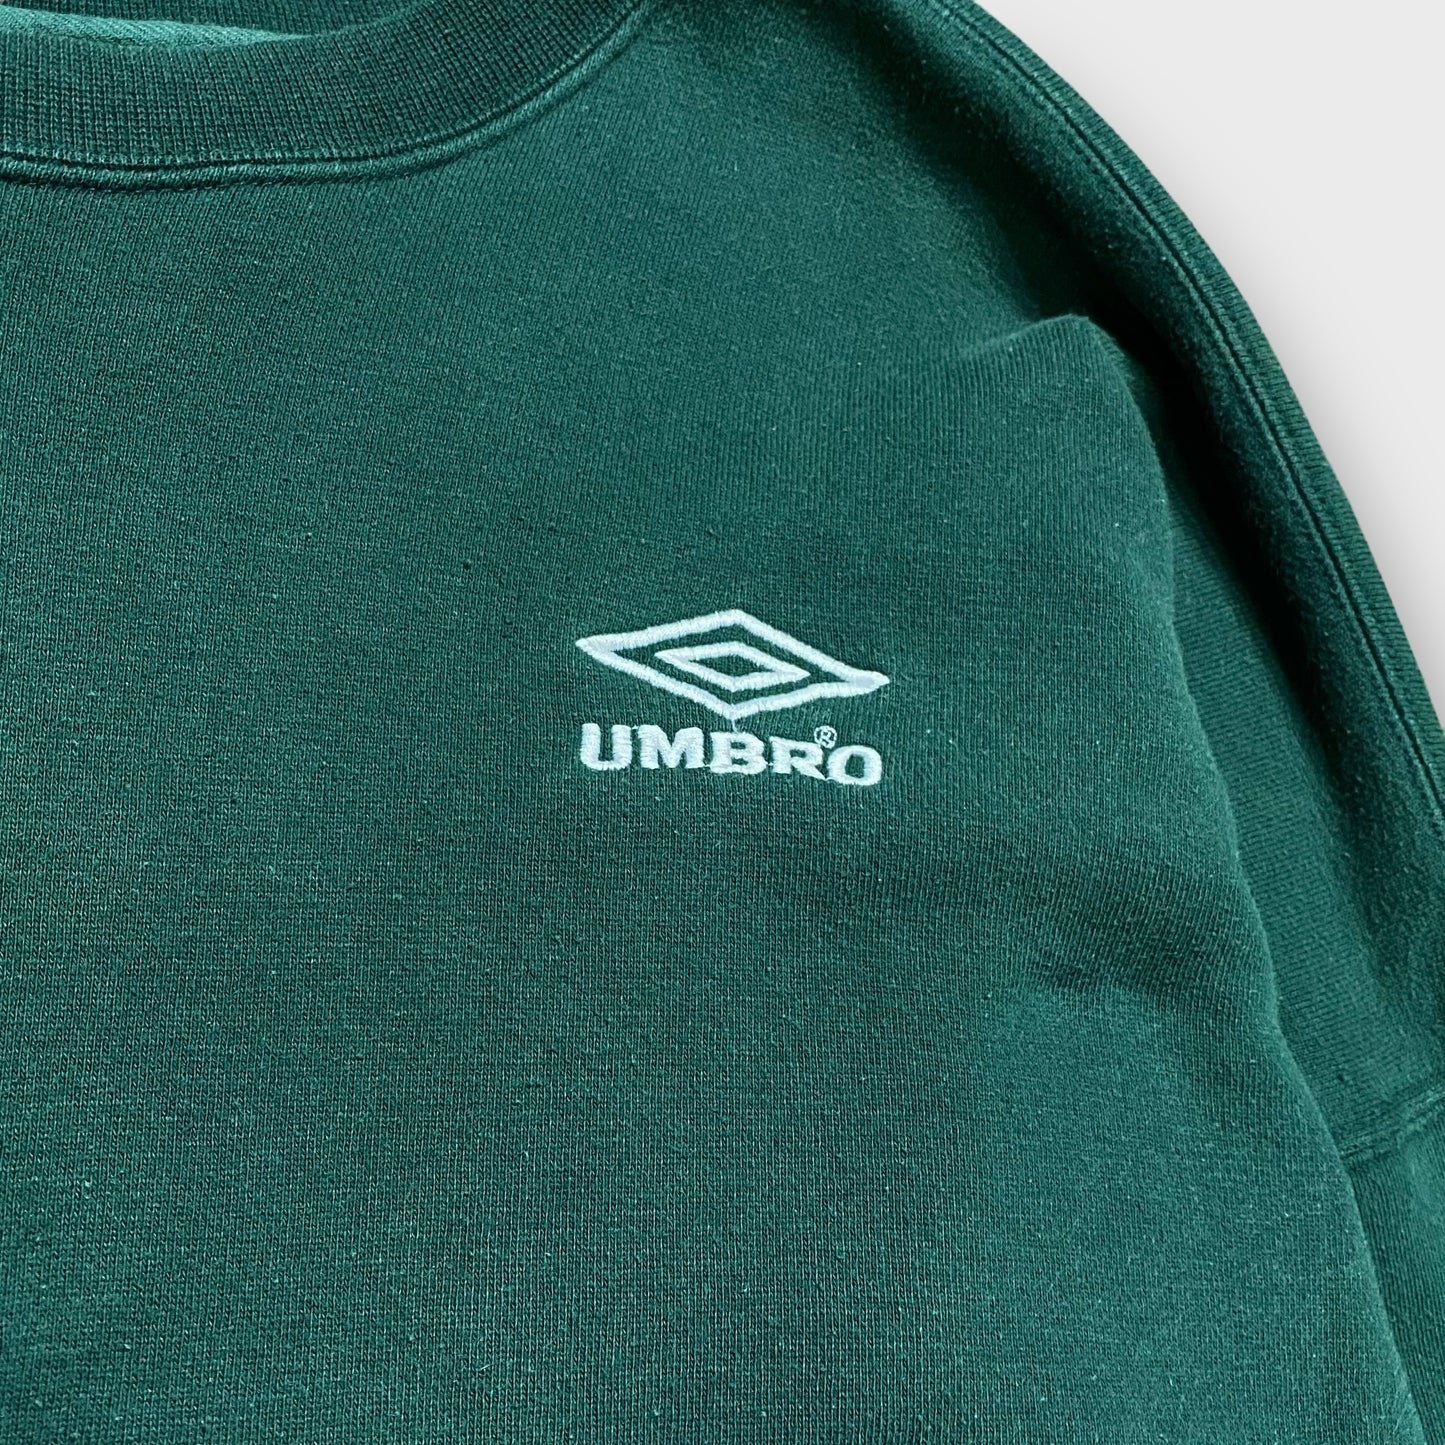 90's "umbro" Logo design sweat